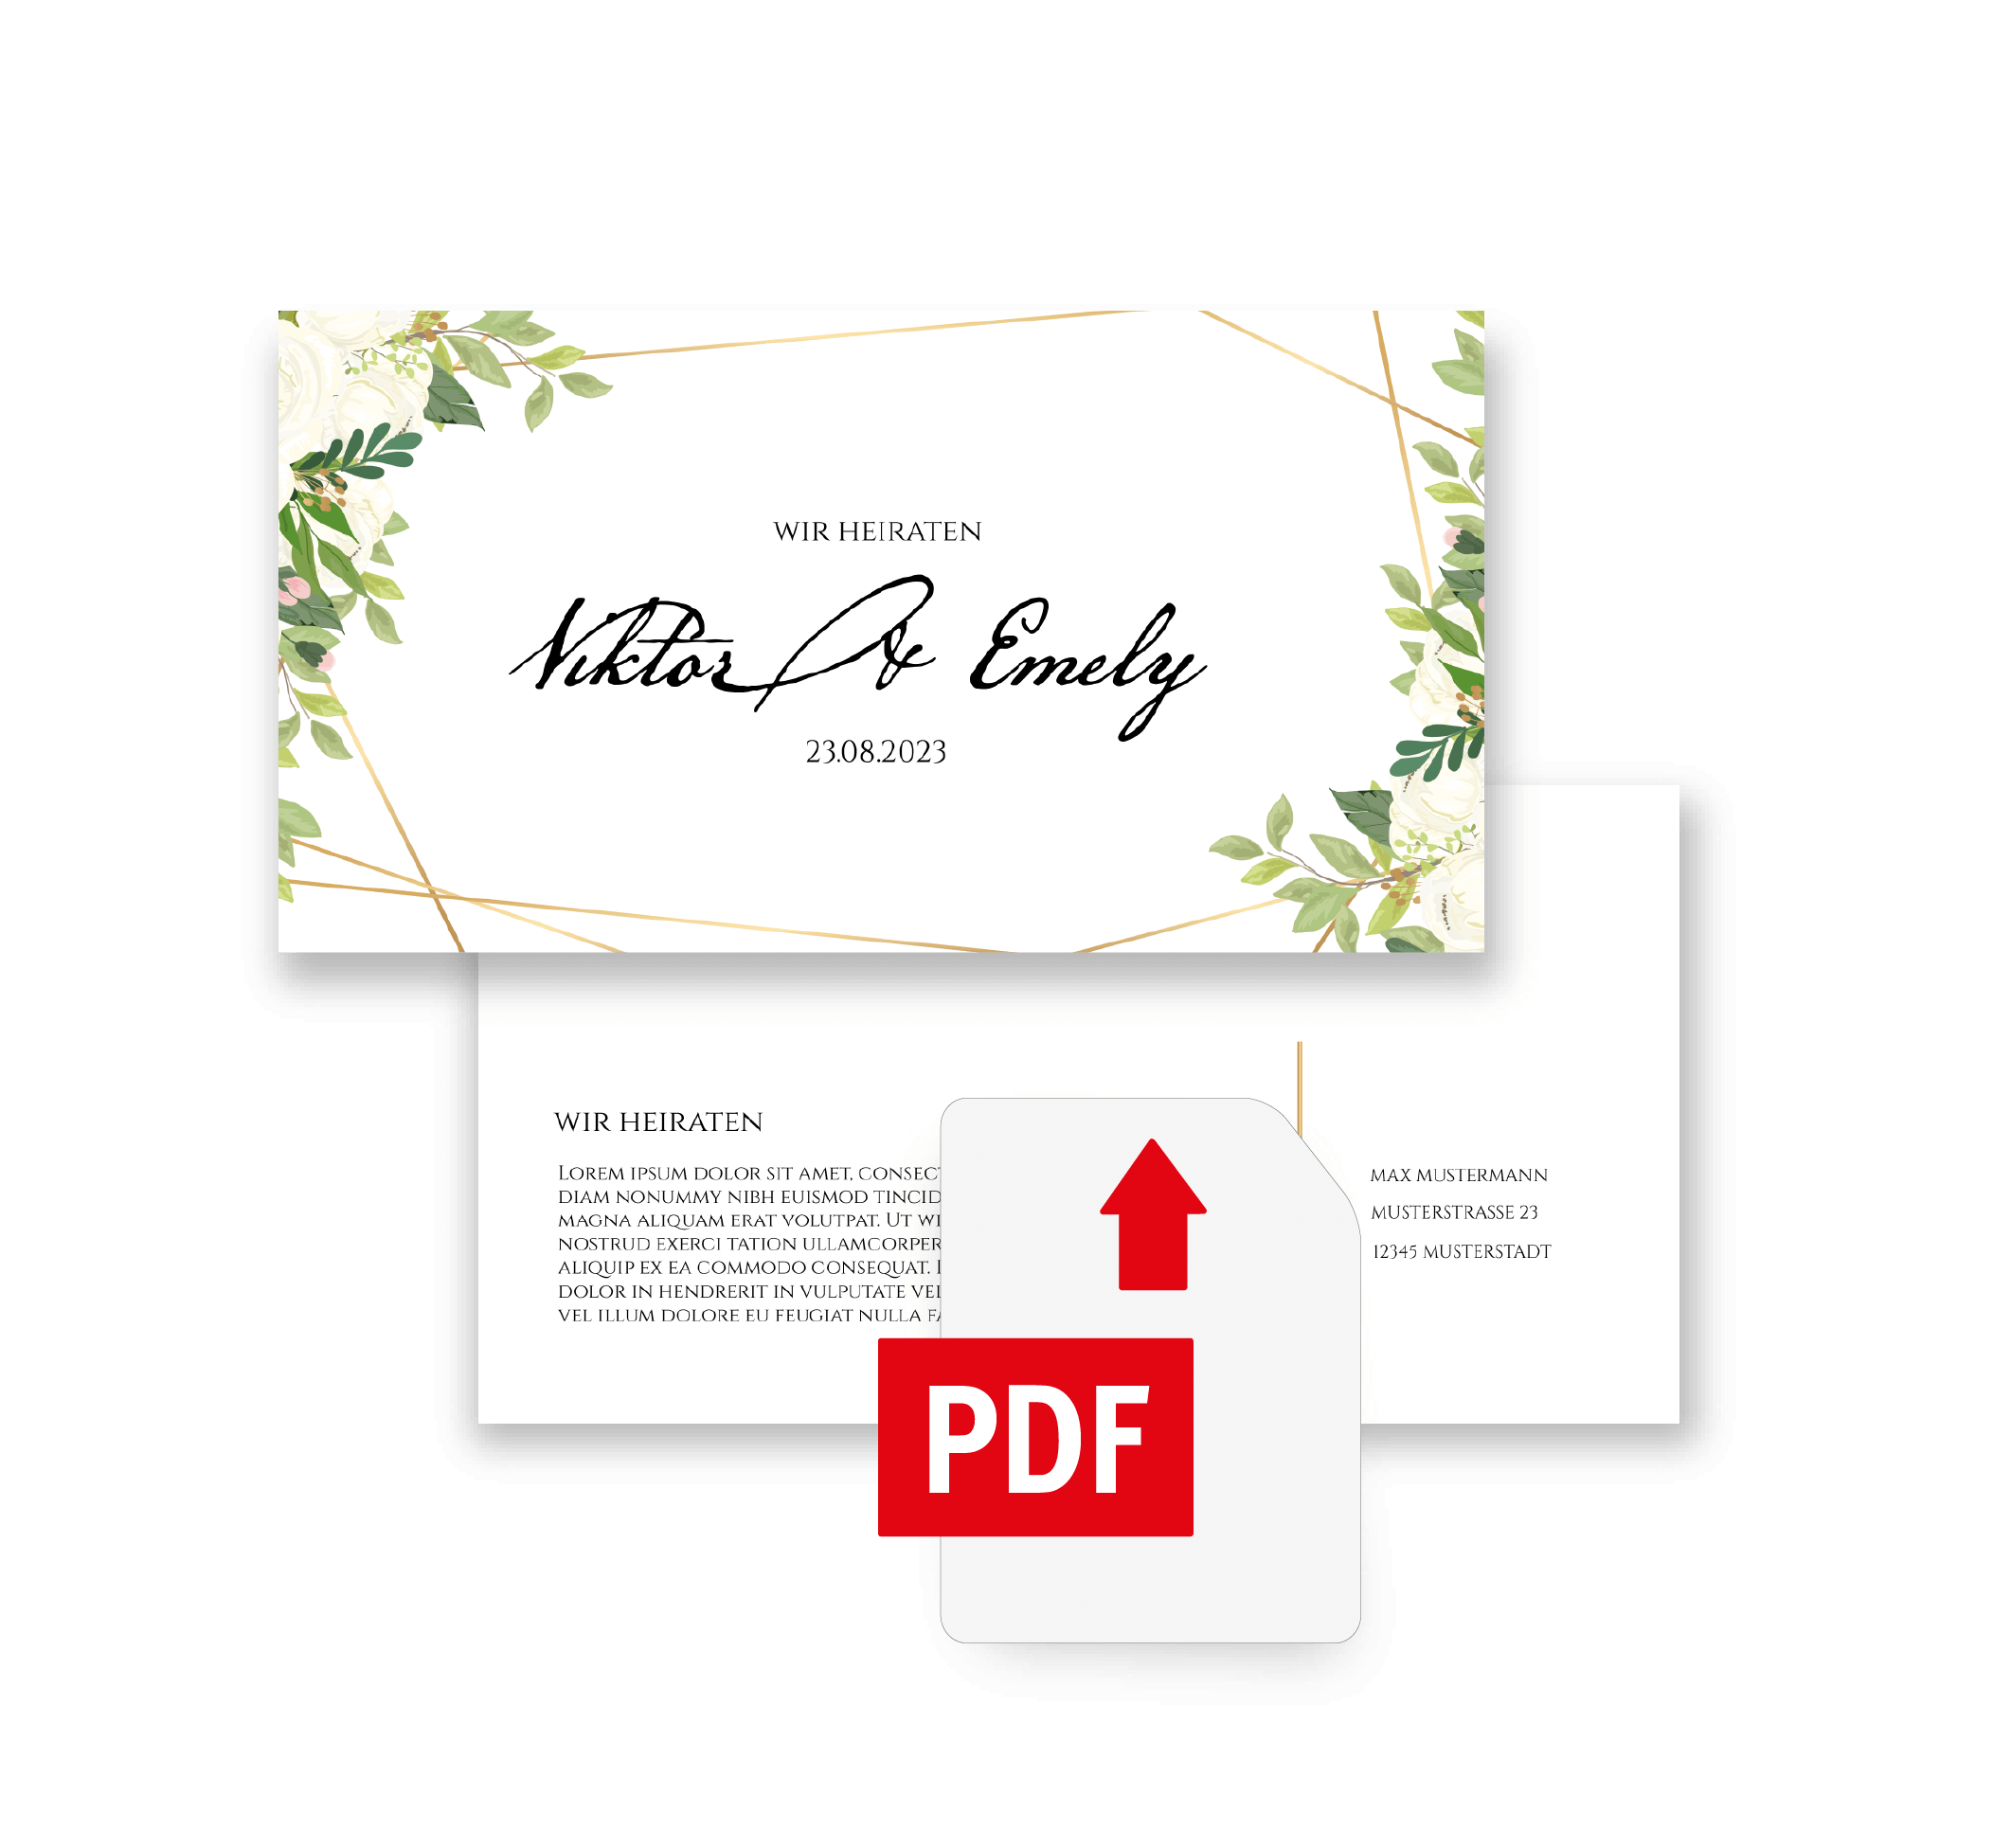 Eigene PDF als Hochzeitskarte drucken lassen